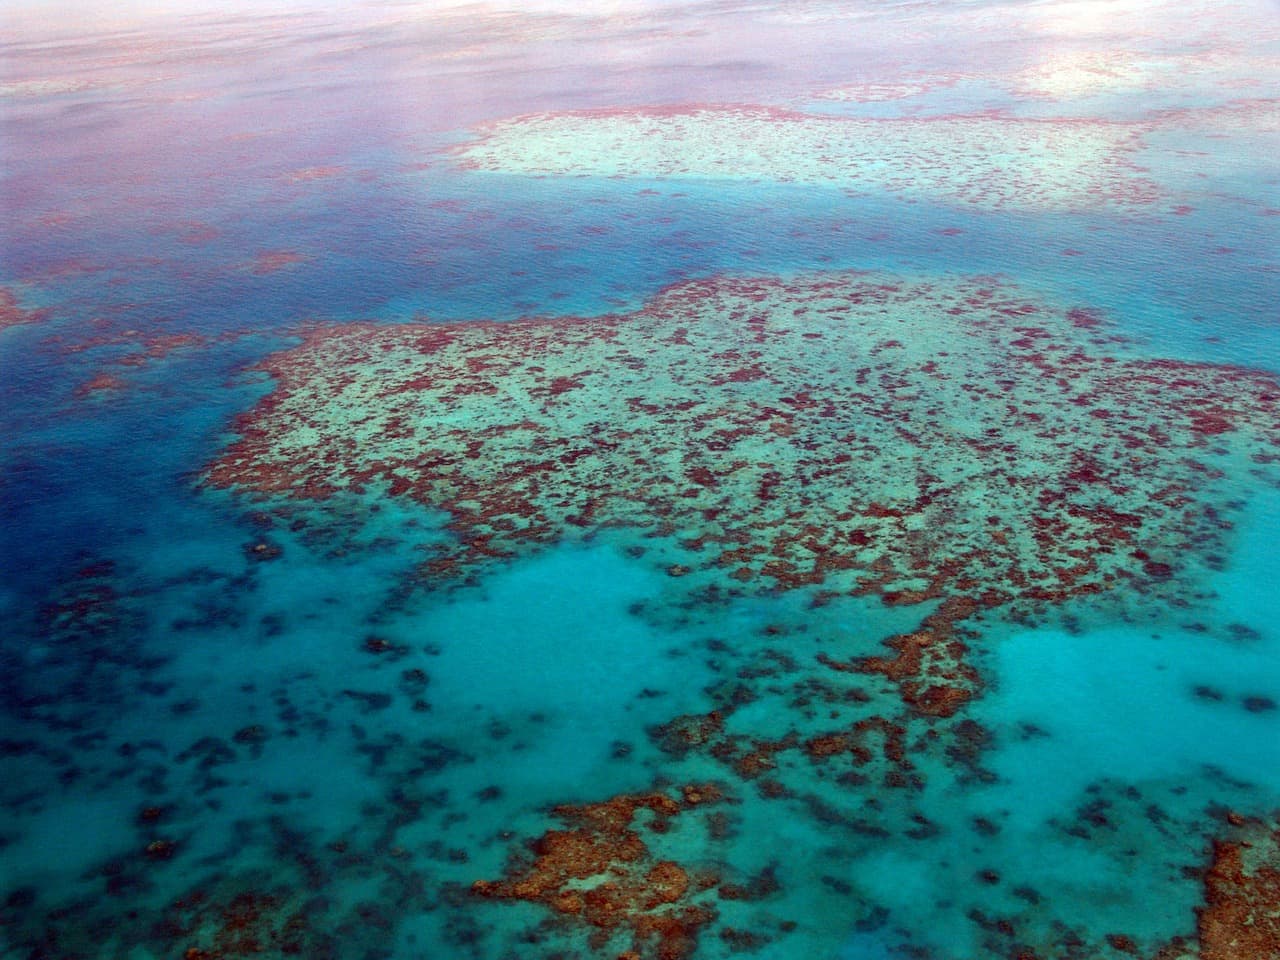 Os corais mais coloridos e diferentes do mundo estão aqui